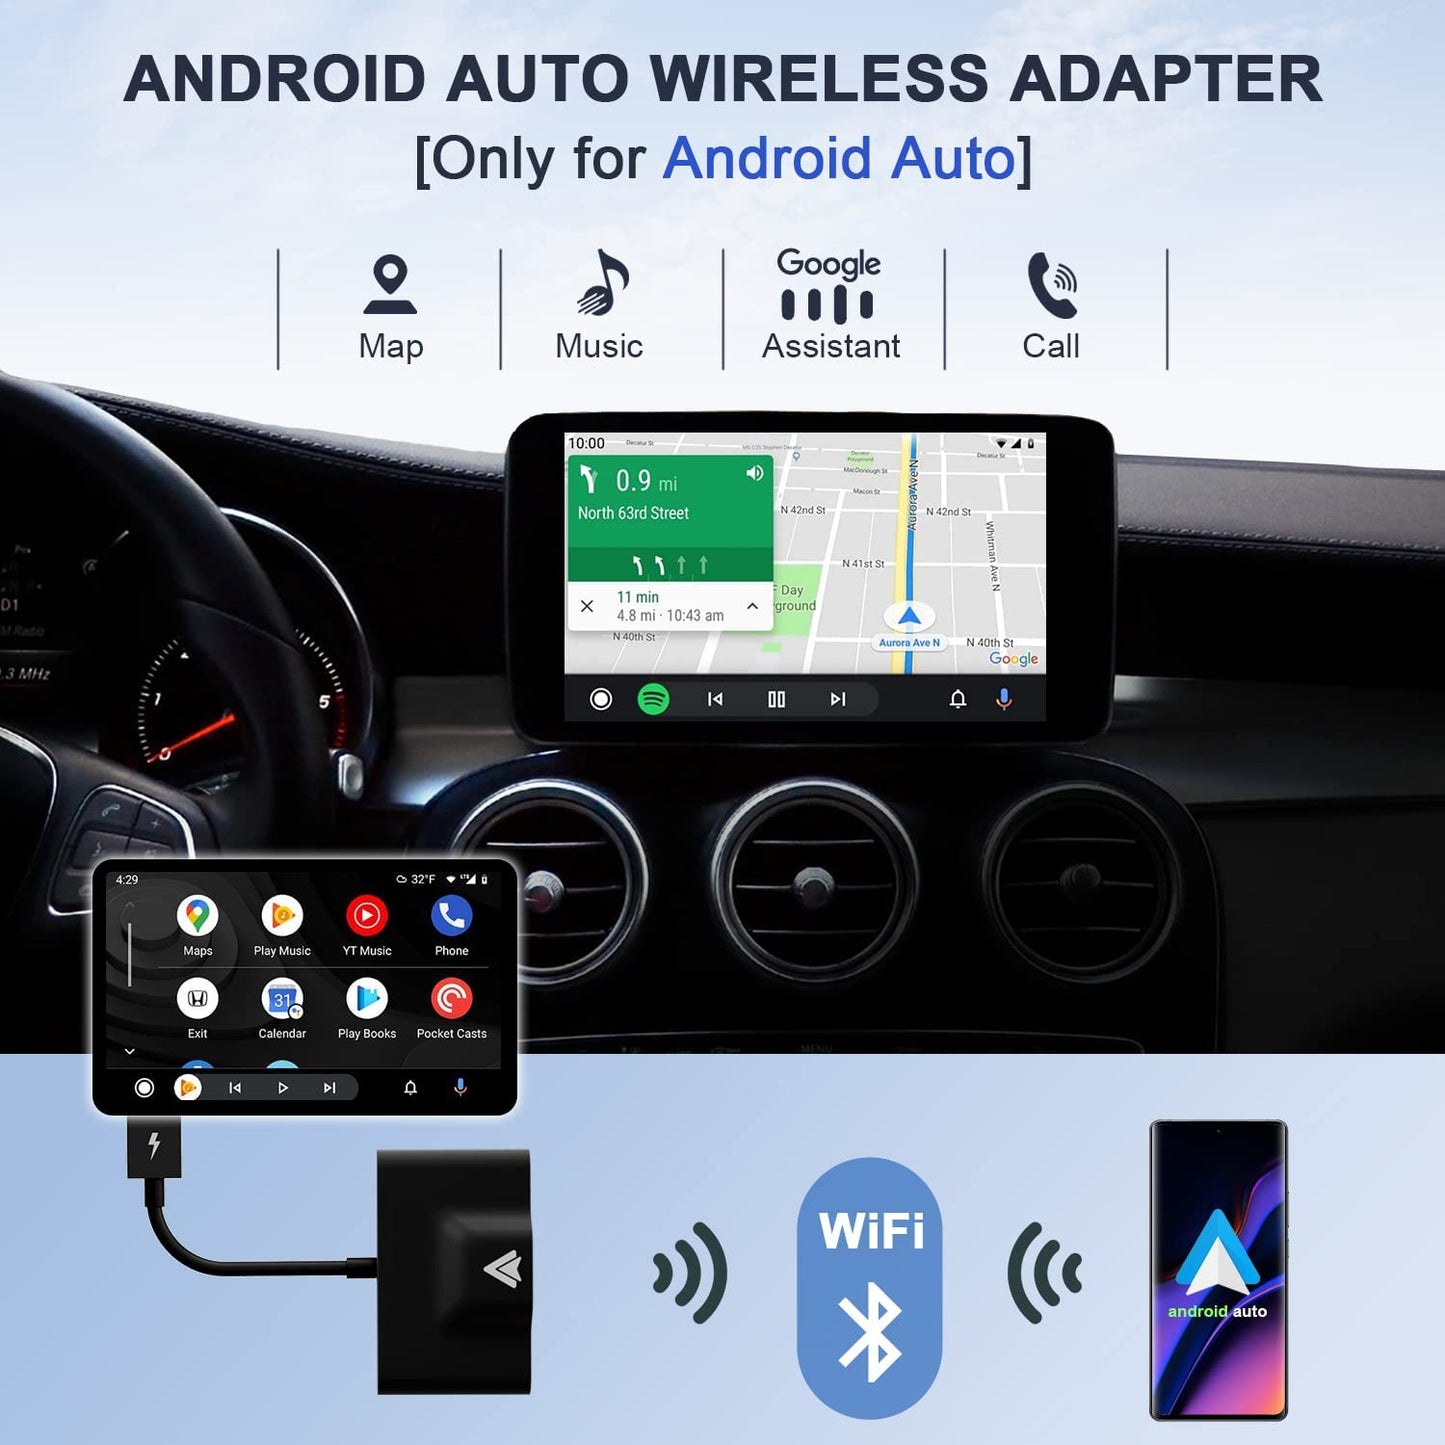 Adaptador Androidauto Inálambrico Wireless Plug&play Android